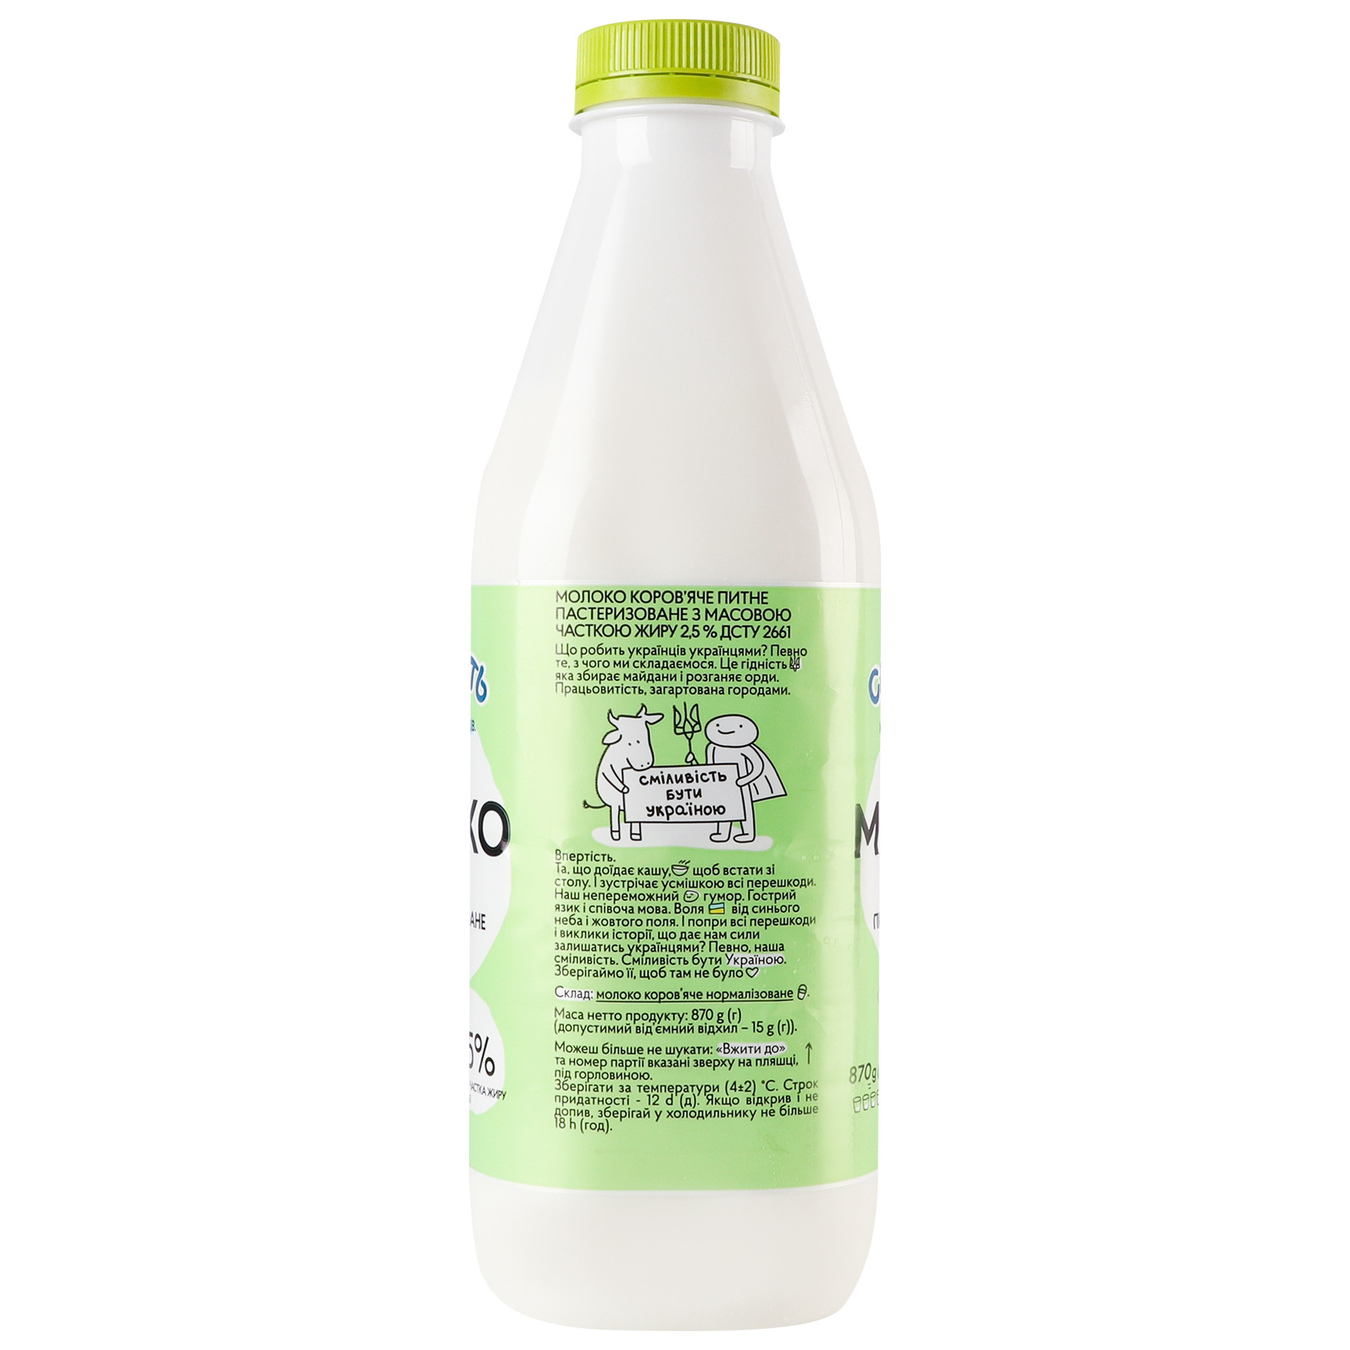 Milk Milk 2.5% 870g 4